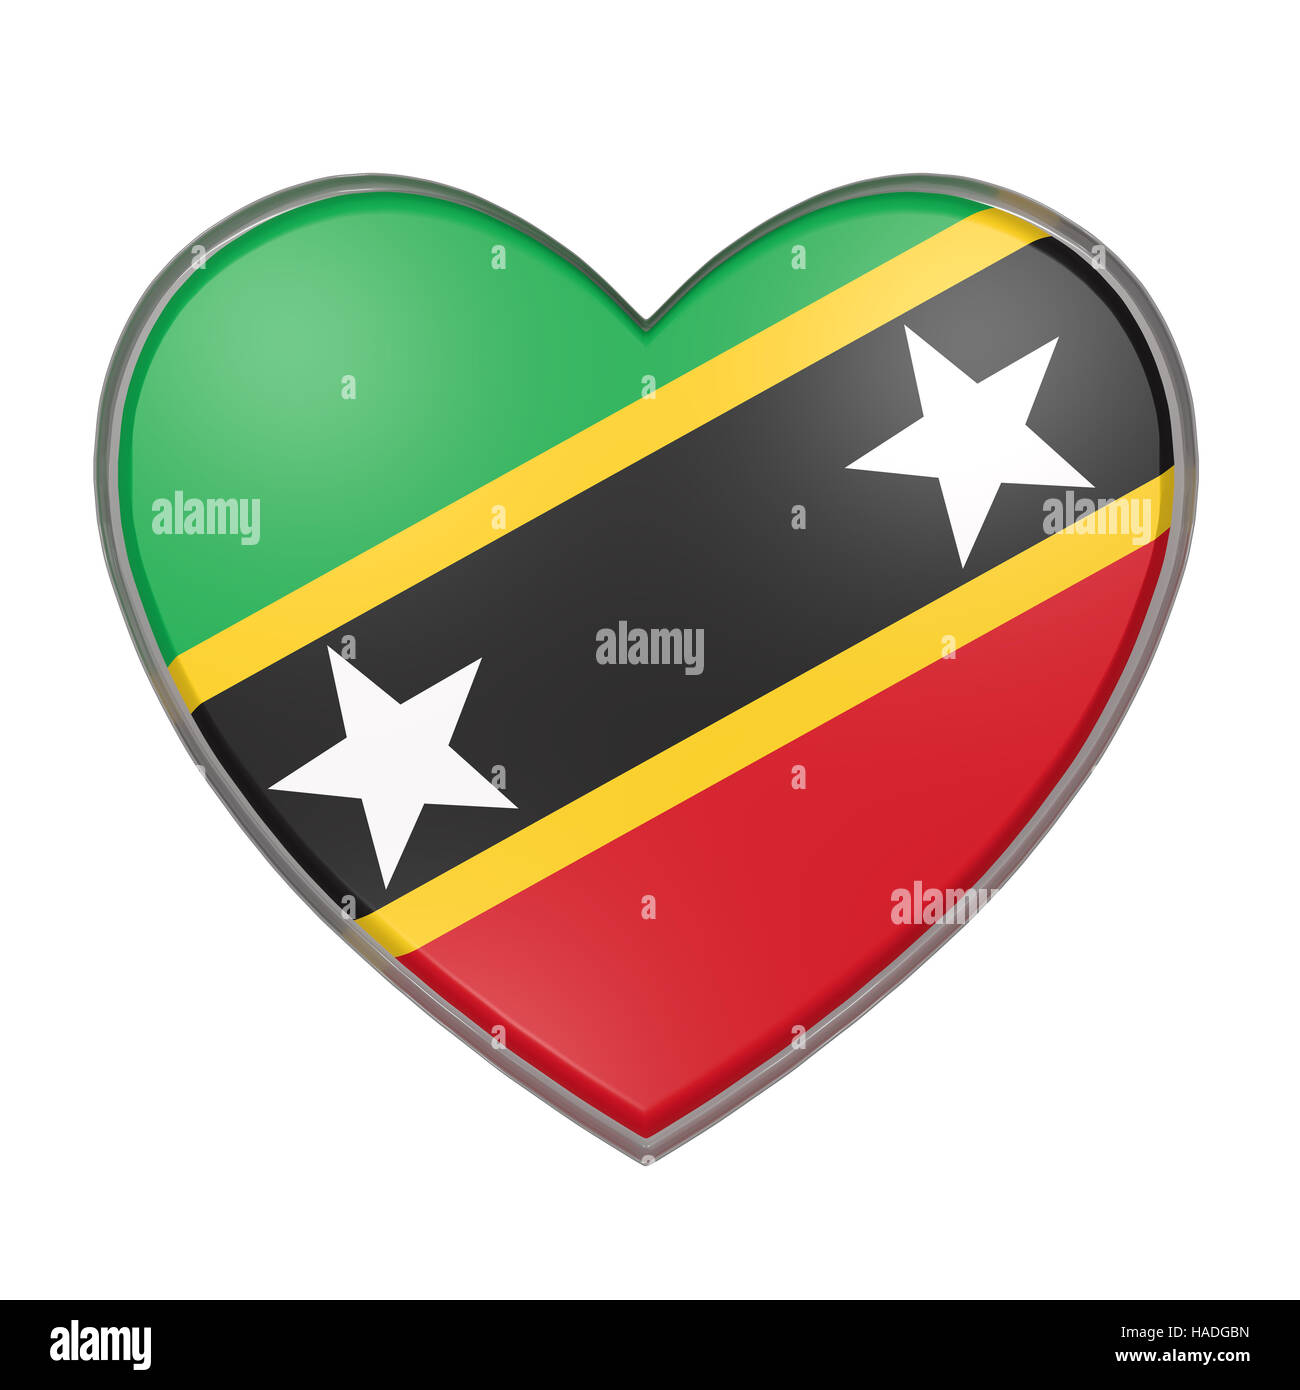 3D-Rendering einer Saint Christopher und Nevis Flagge am Herzen. Weißem Hintergrund Stockfoto